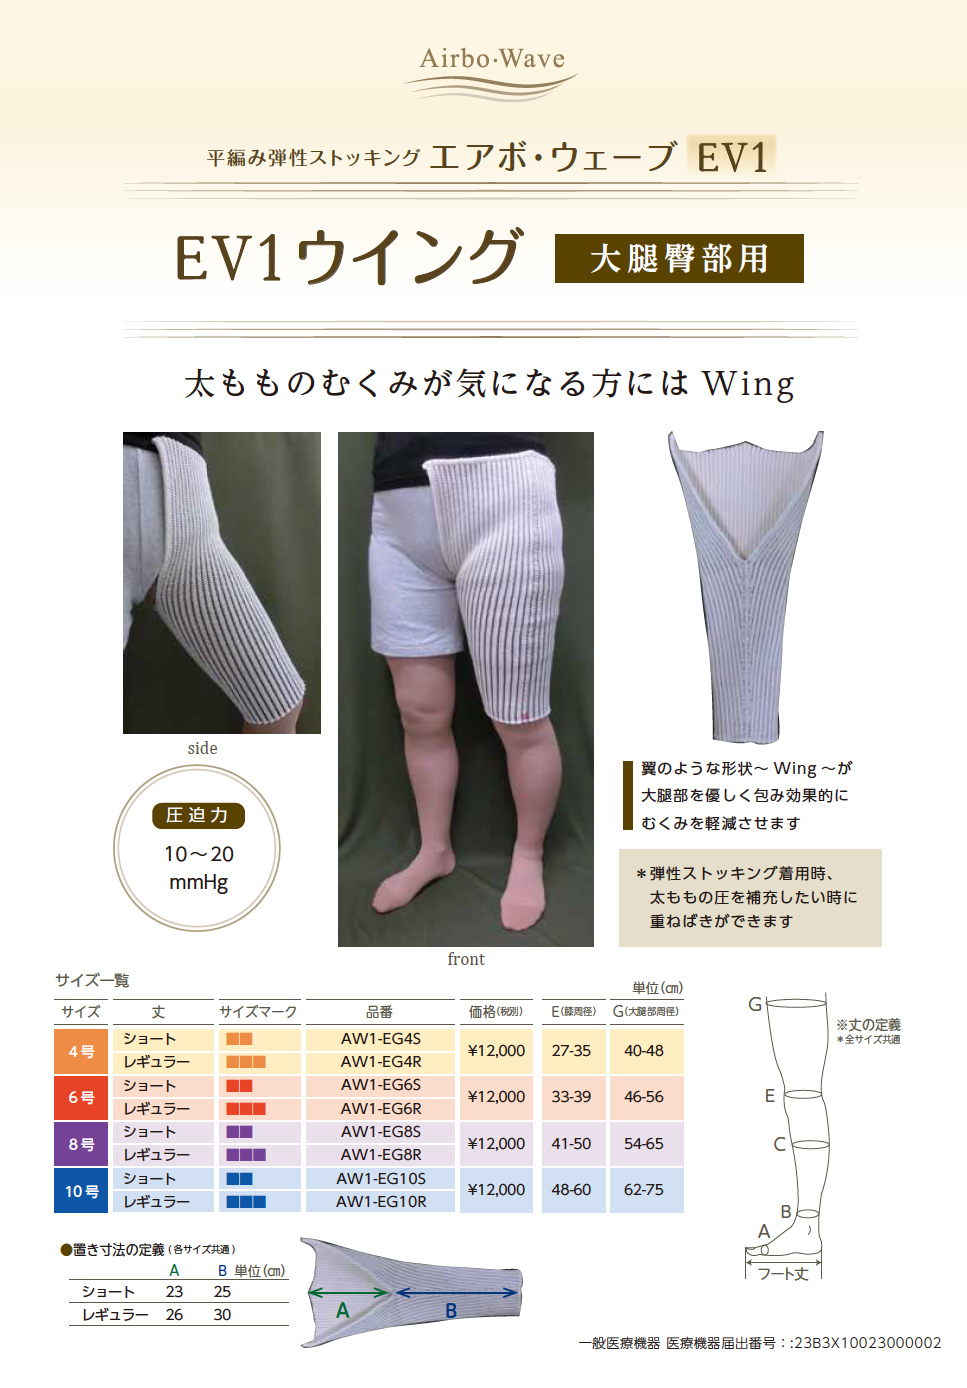 平編み弾性ストッキング「エアボ・ウェーブEV1」（膝下用・脚用・大腿臀部用・大腿上部および腹部用） | 三優メディカル株式会社